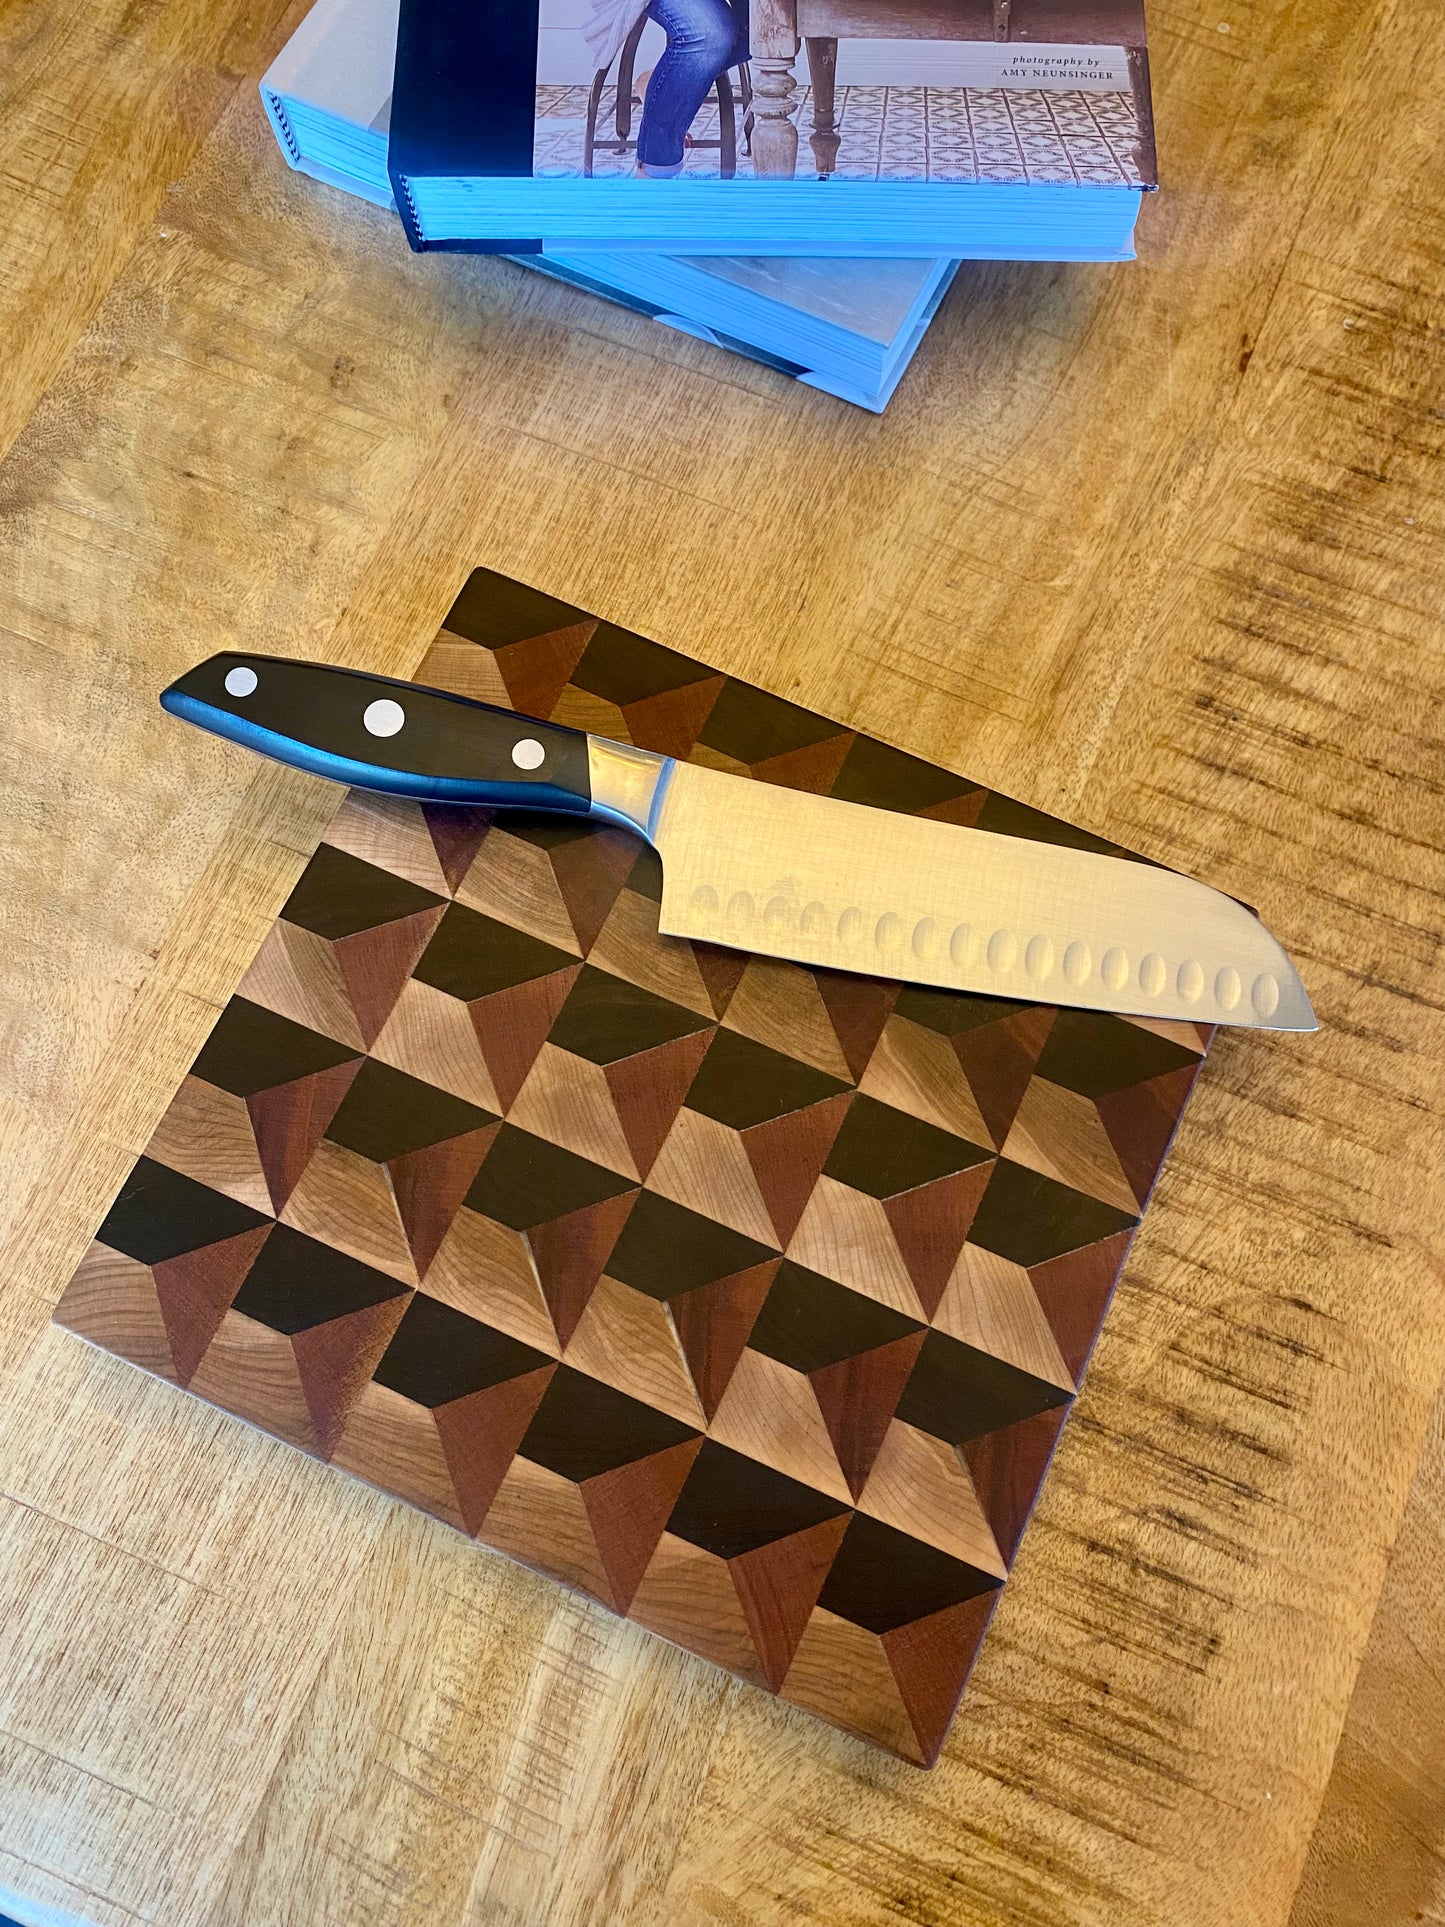 Square geometric cutting board